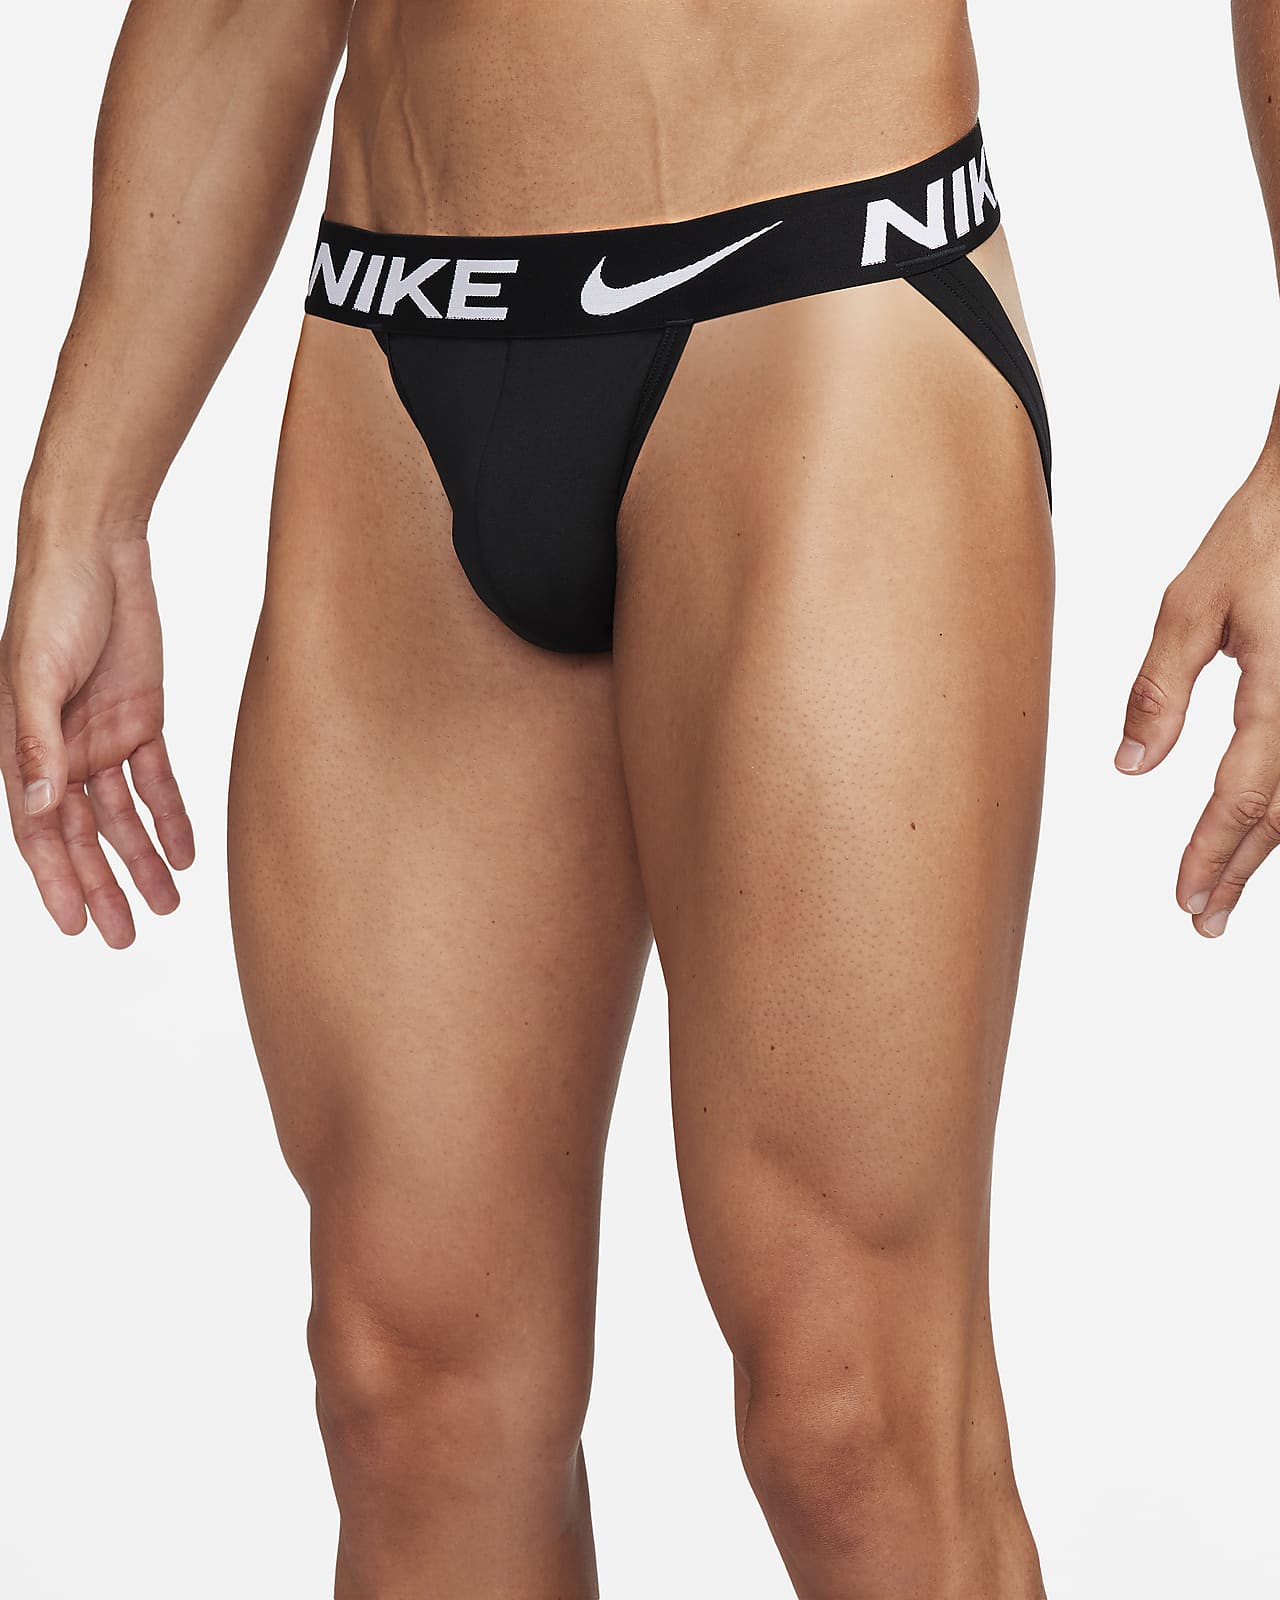 Nike Dri-Fit Cotton Stretch 3-Pack Jockstrap Underwear Briefs - Mens XL -  Black